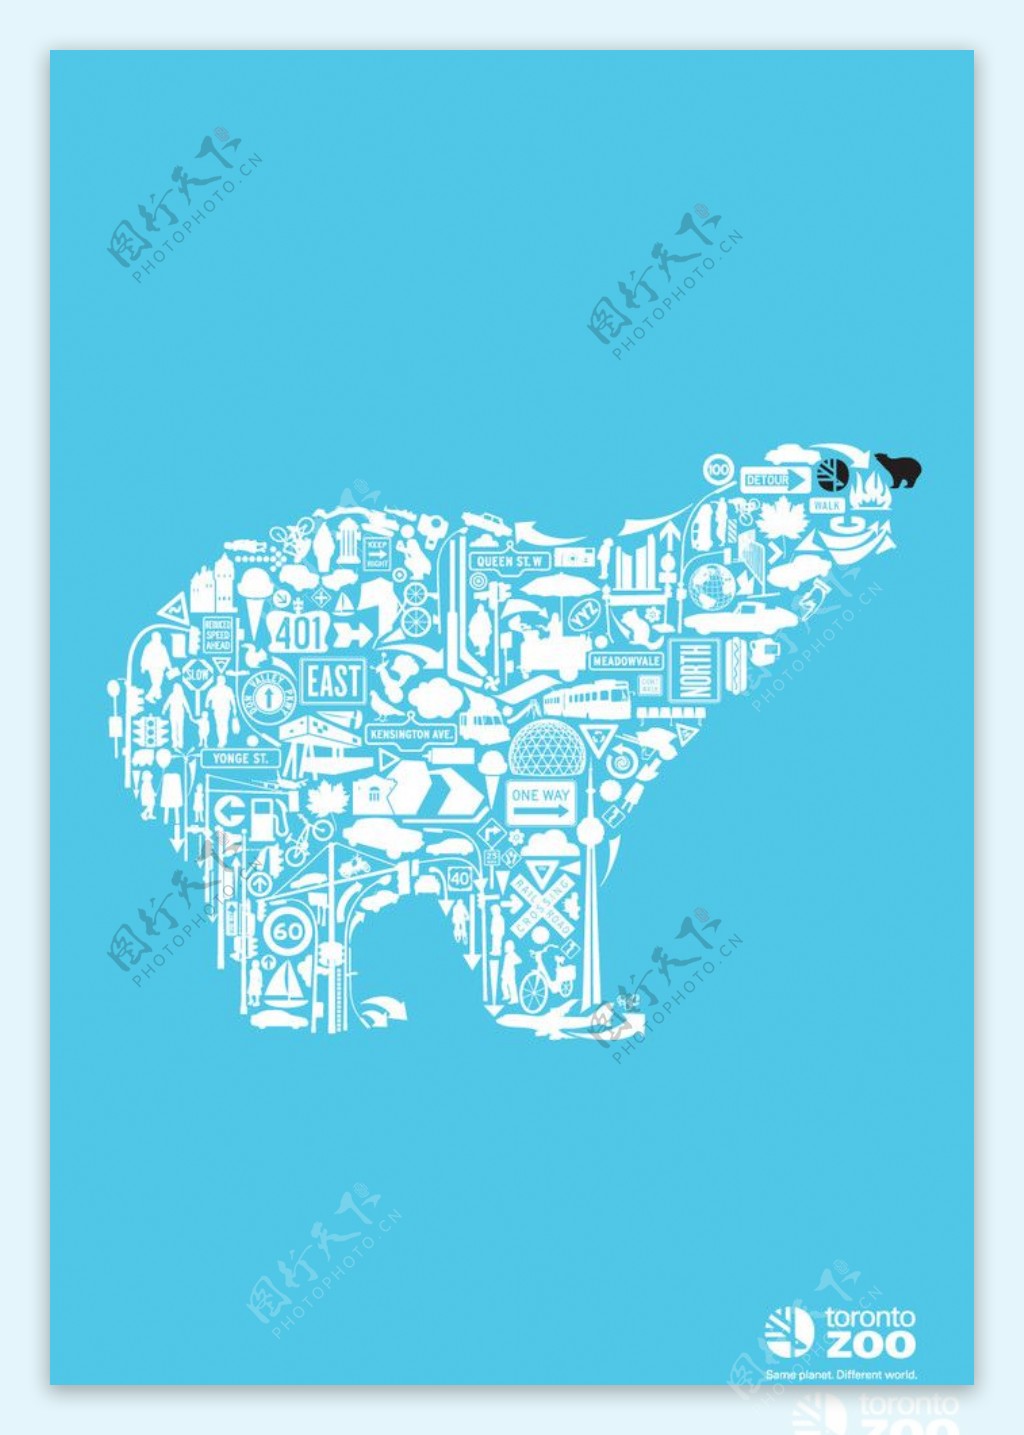 北極熊海報图片